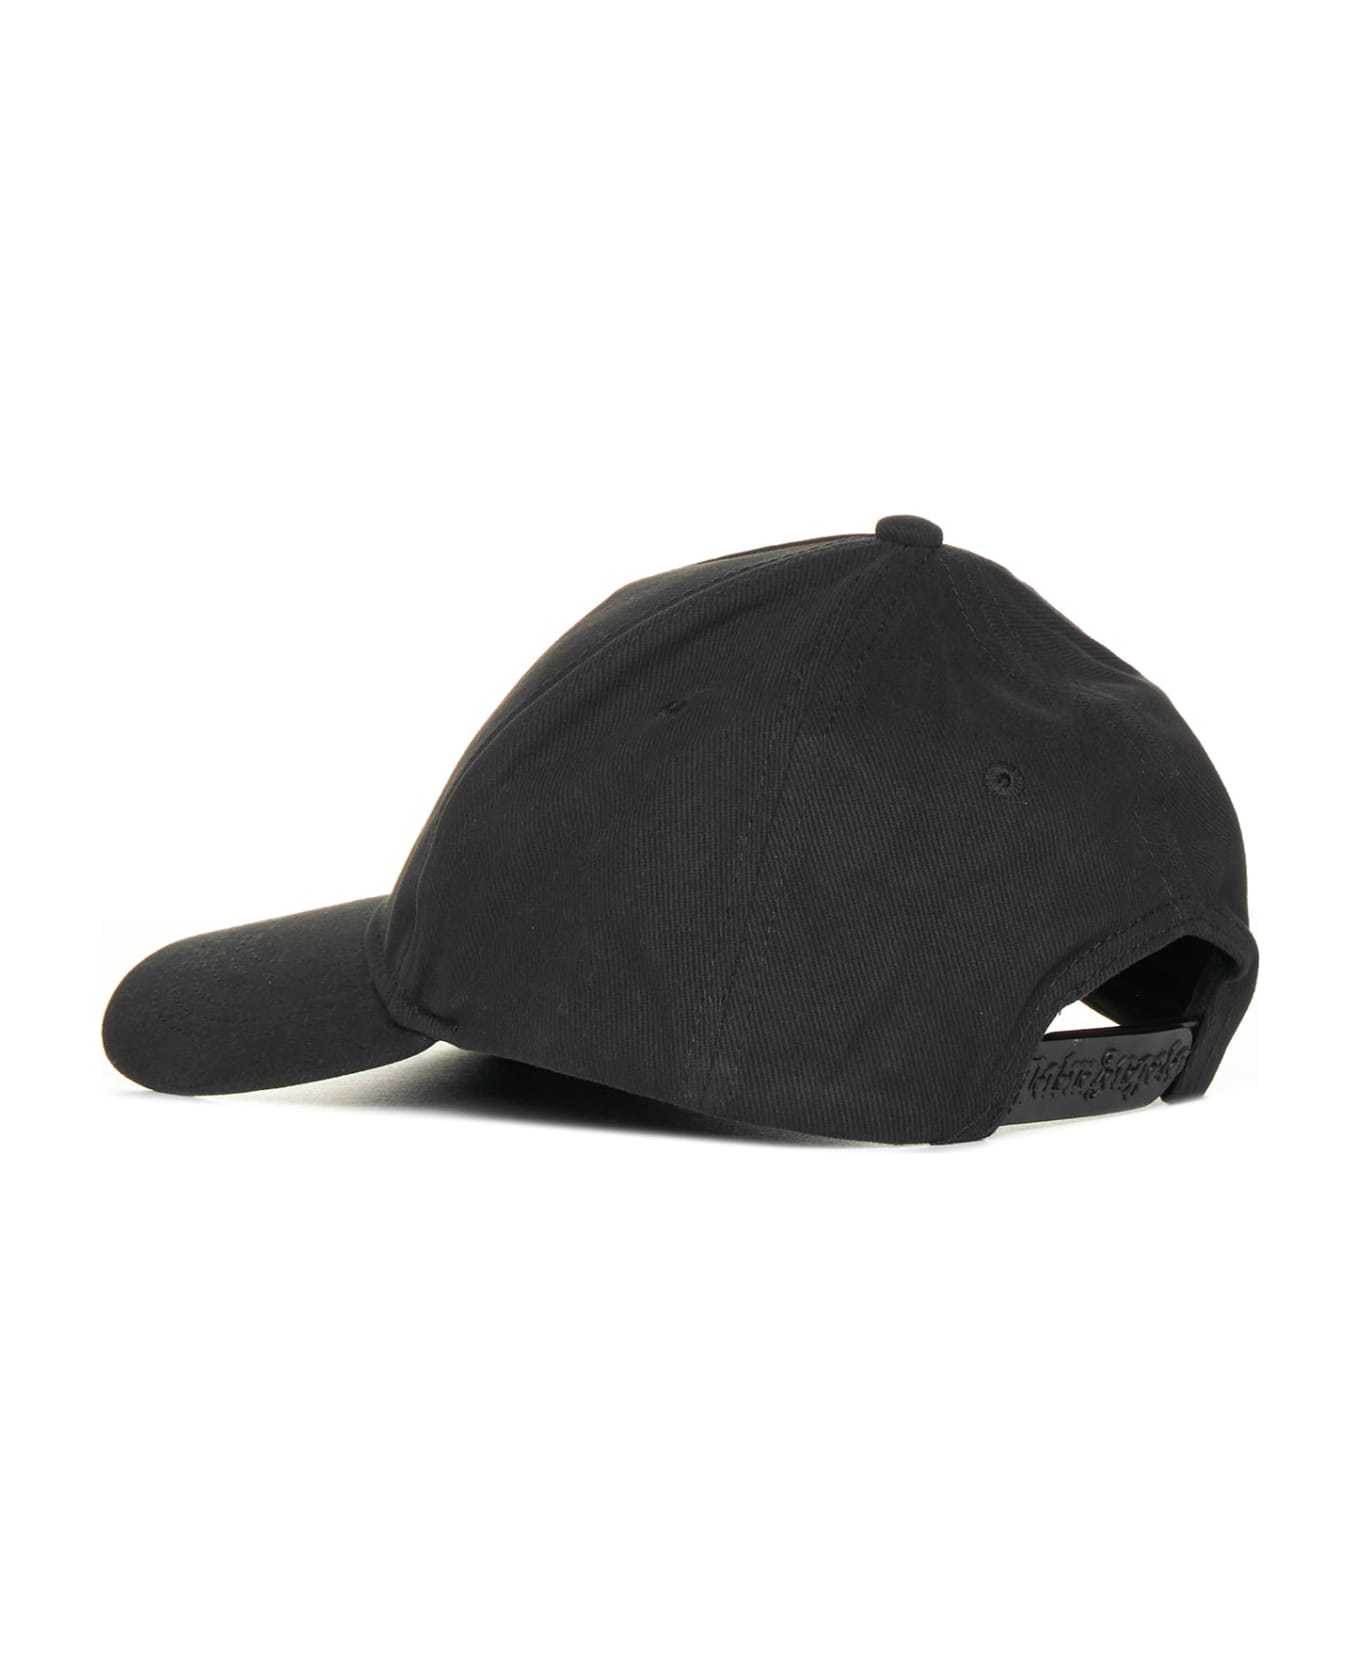 Palm Angels Sketchy Baseball Cap - Black 帽子